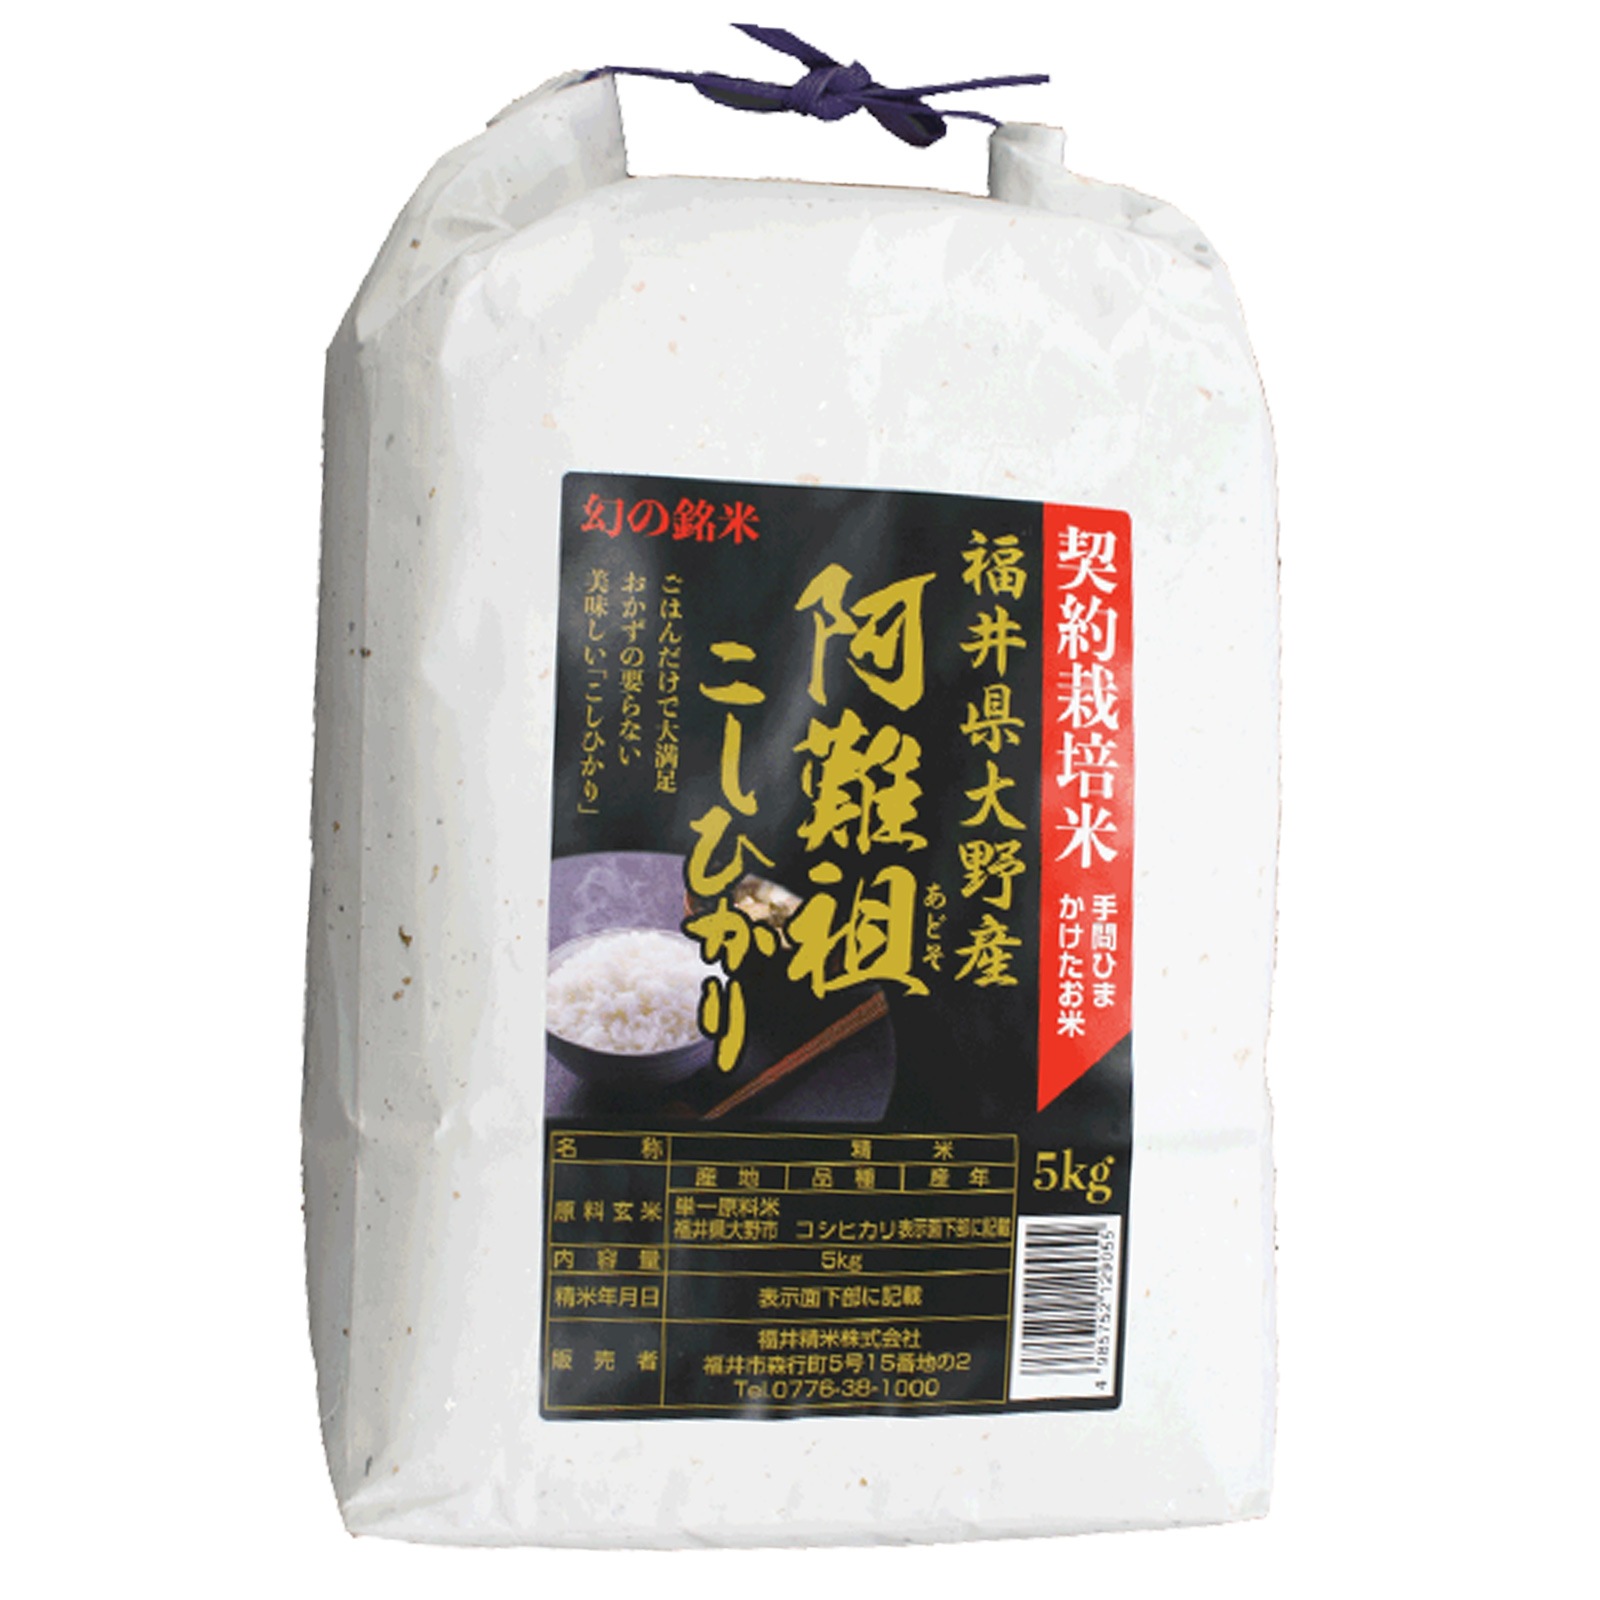 [Qoo10] 福井大野阿難祖産コシヒカリ5kg 白米 : 米・雑穀